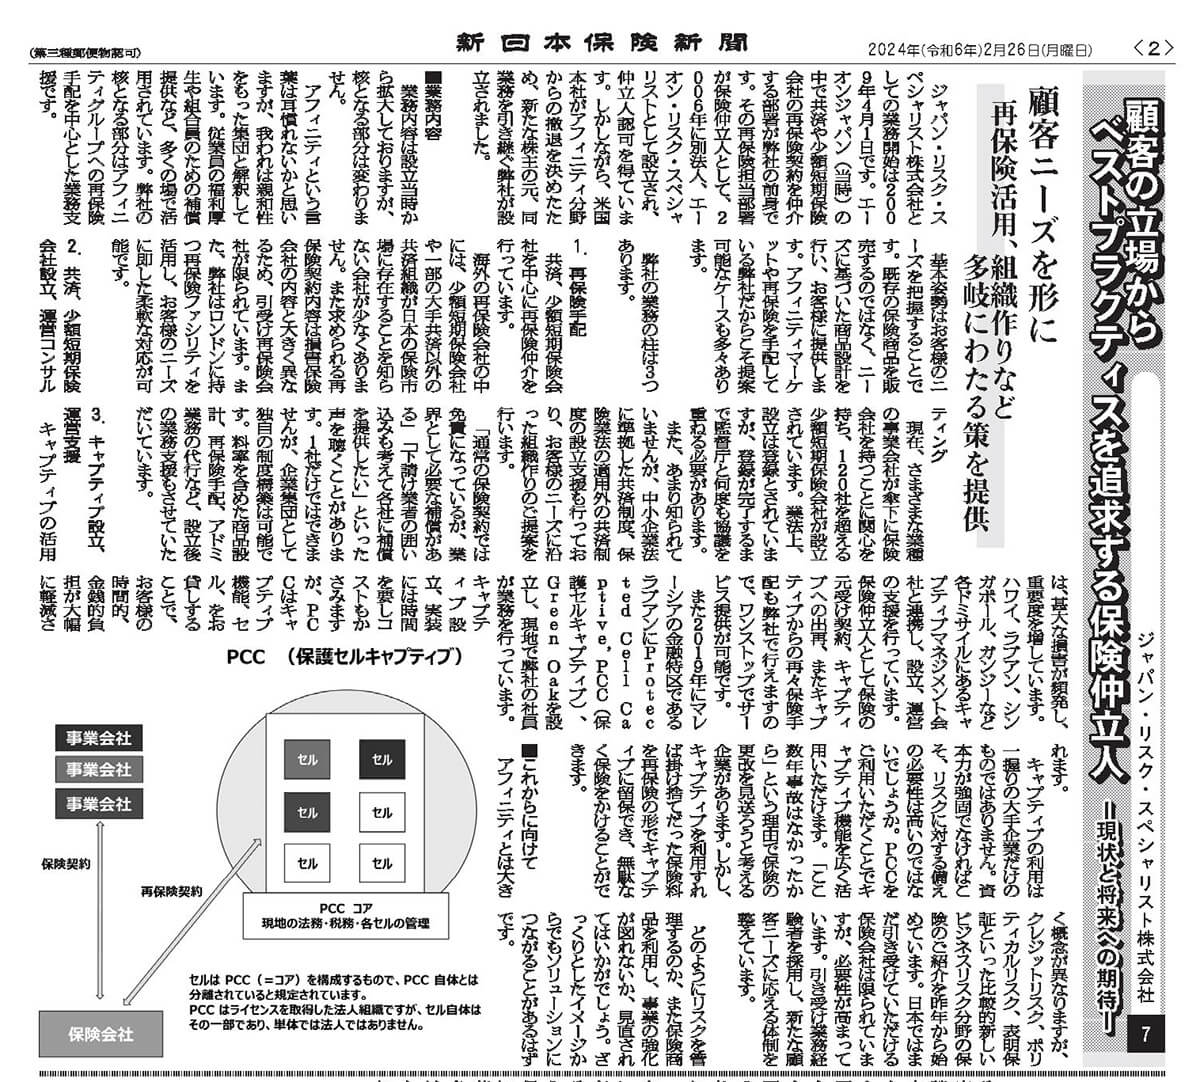 新日本保険新聞に掲載された記事「顧客の立場からベストプラクティスを追求する保険仲立人- 現状と将来への期待 -」